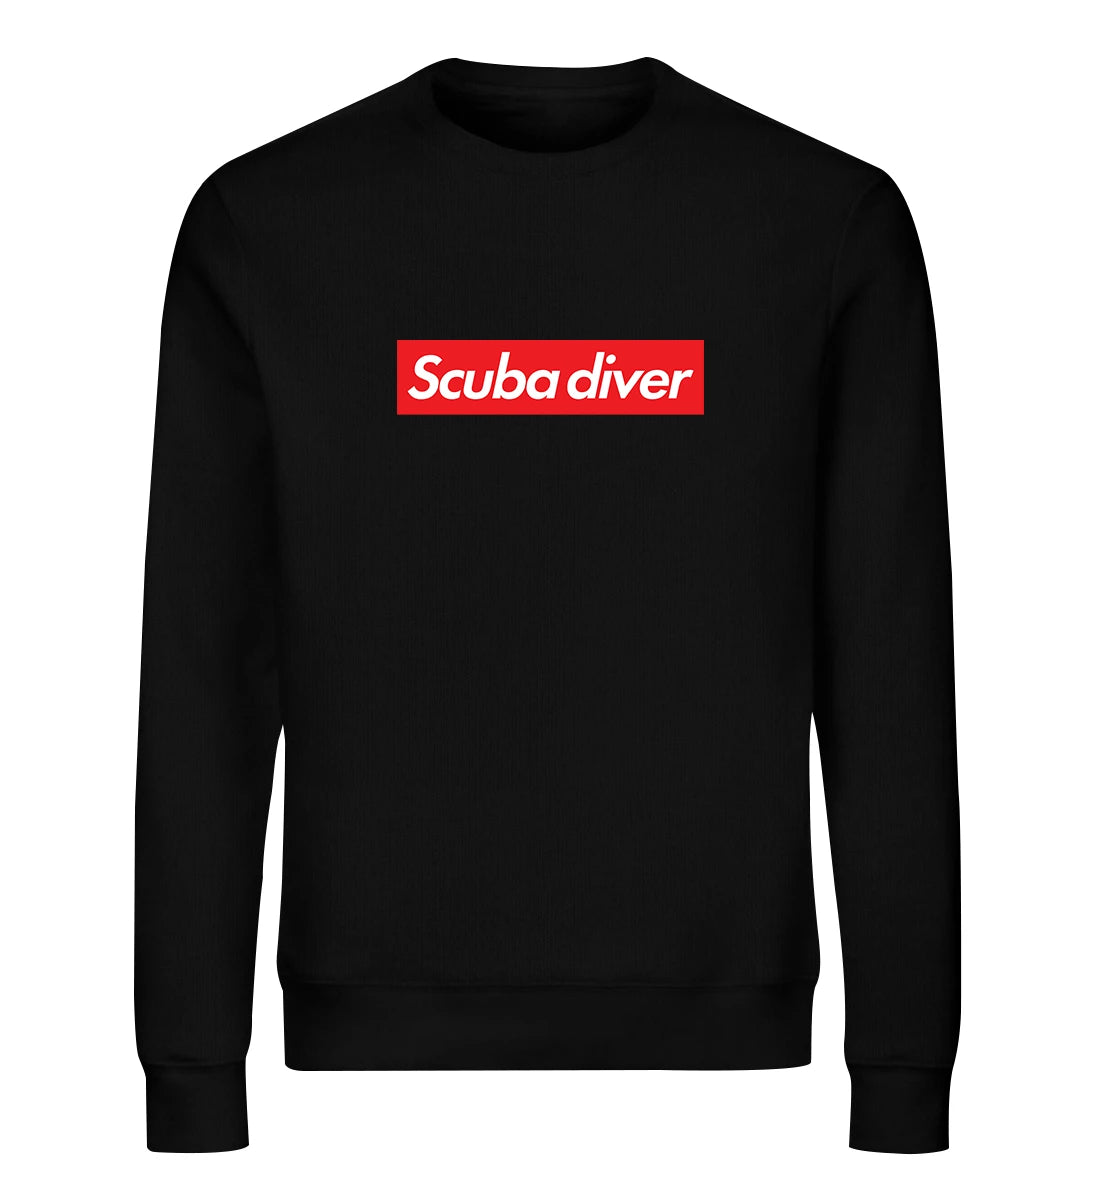 Scuba diver - Bio Sweater